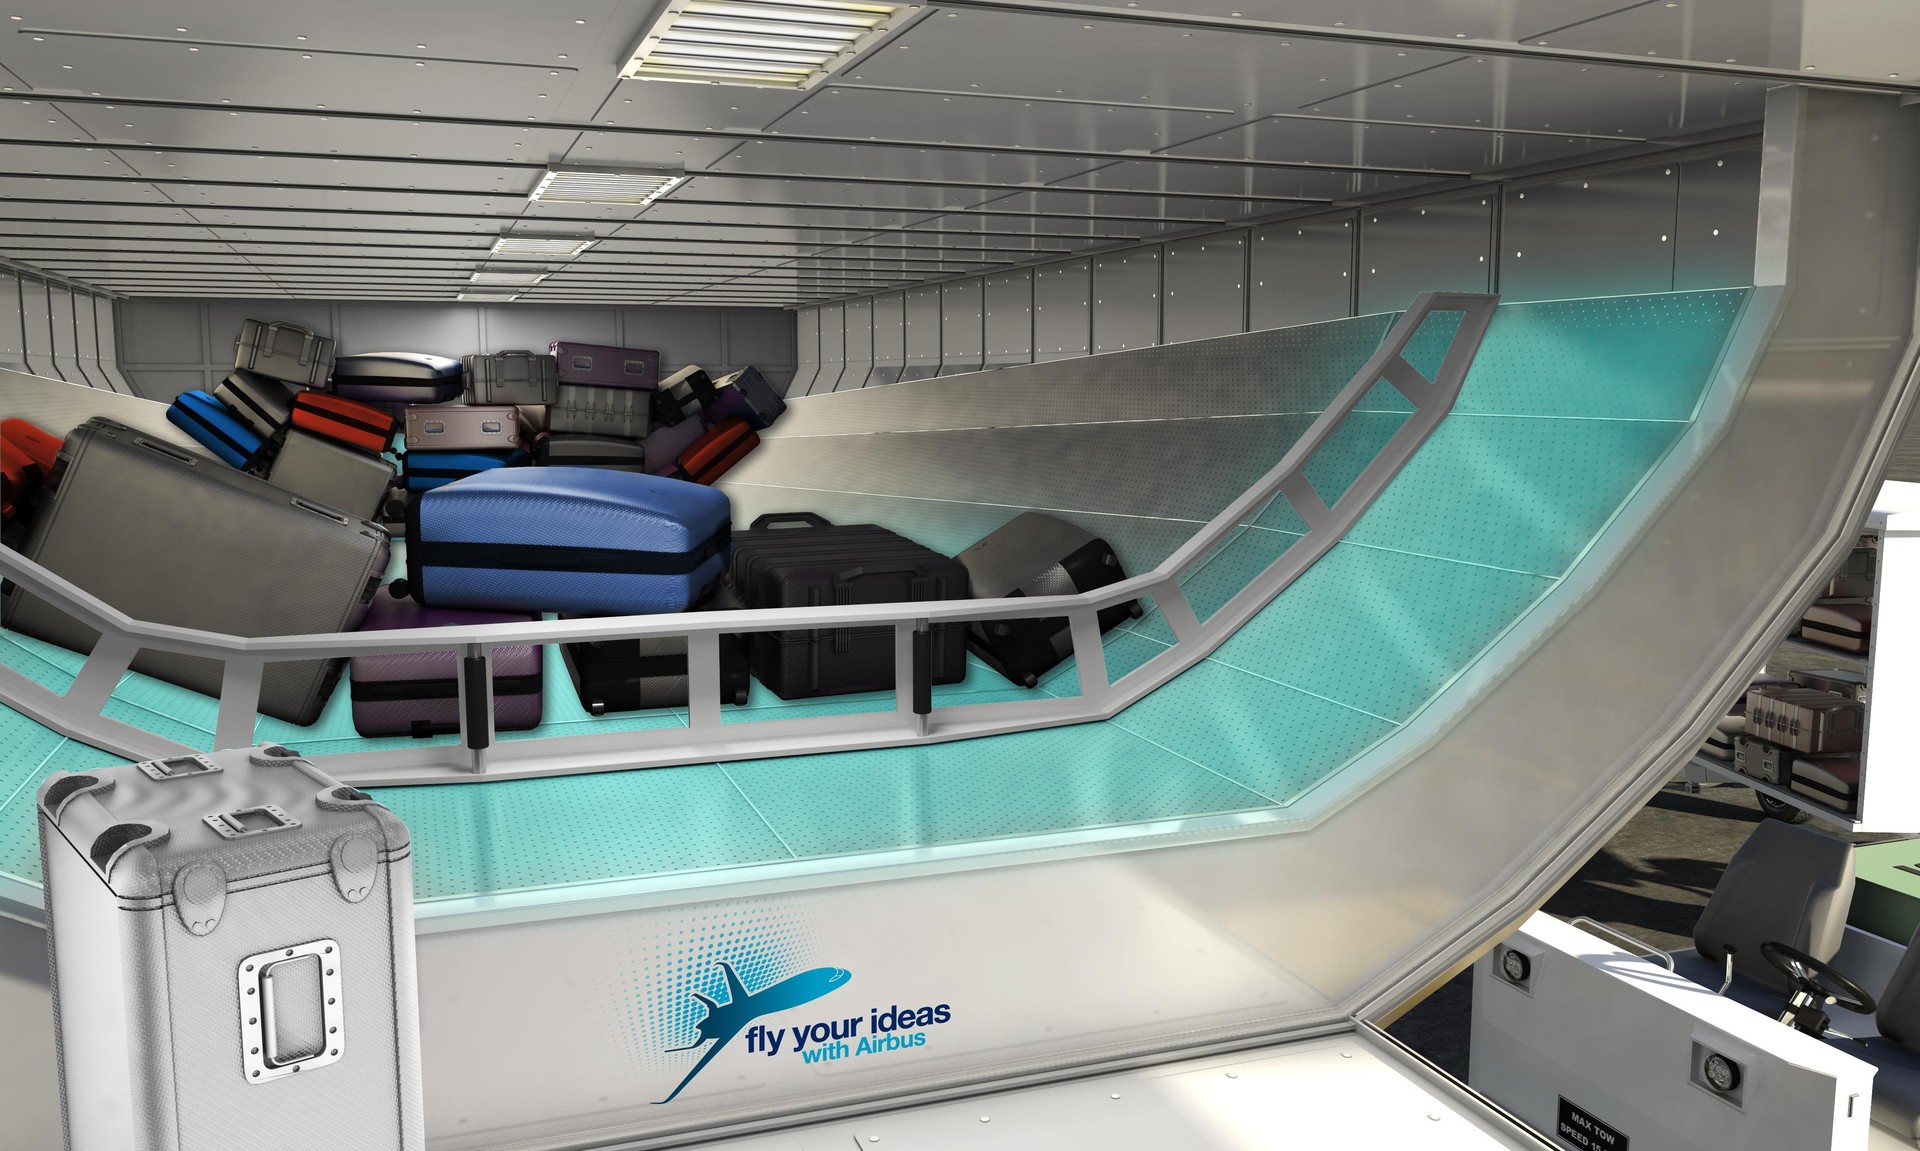 [Brasil] Projeto de estudantes da USP facilita manuseio de bagagens em aviões Fly_your_ideas_1